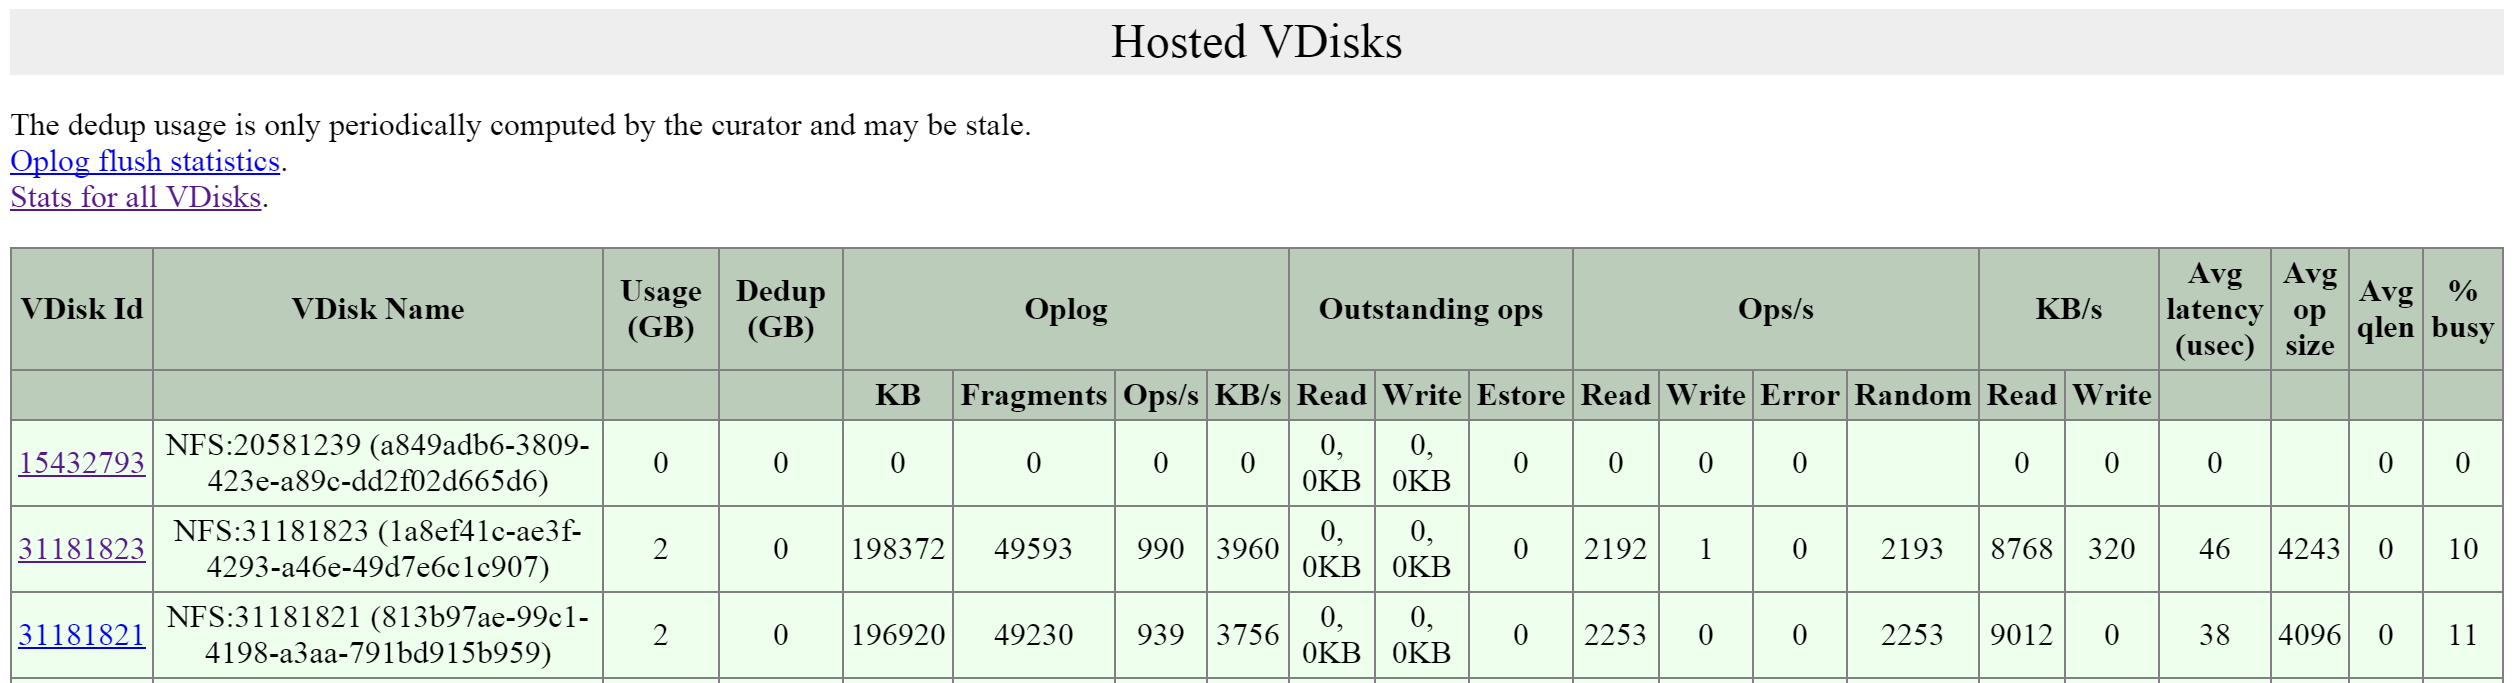 2009 Page - Hosted vDisks